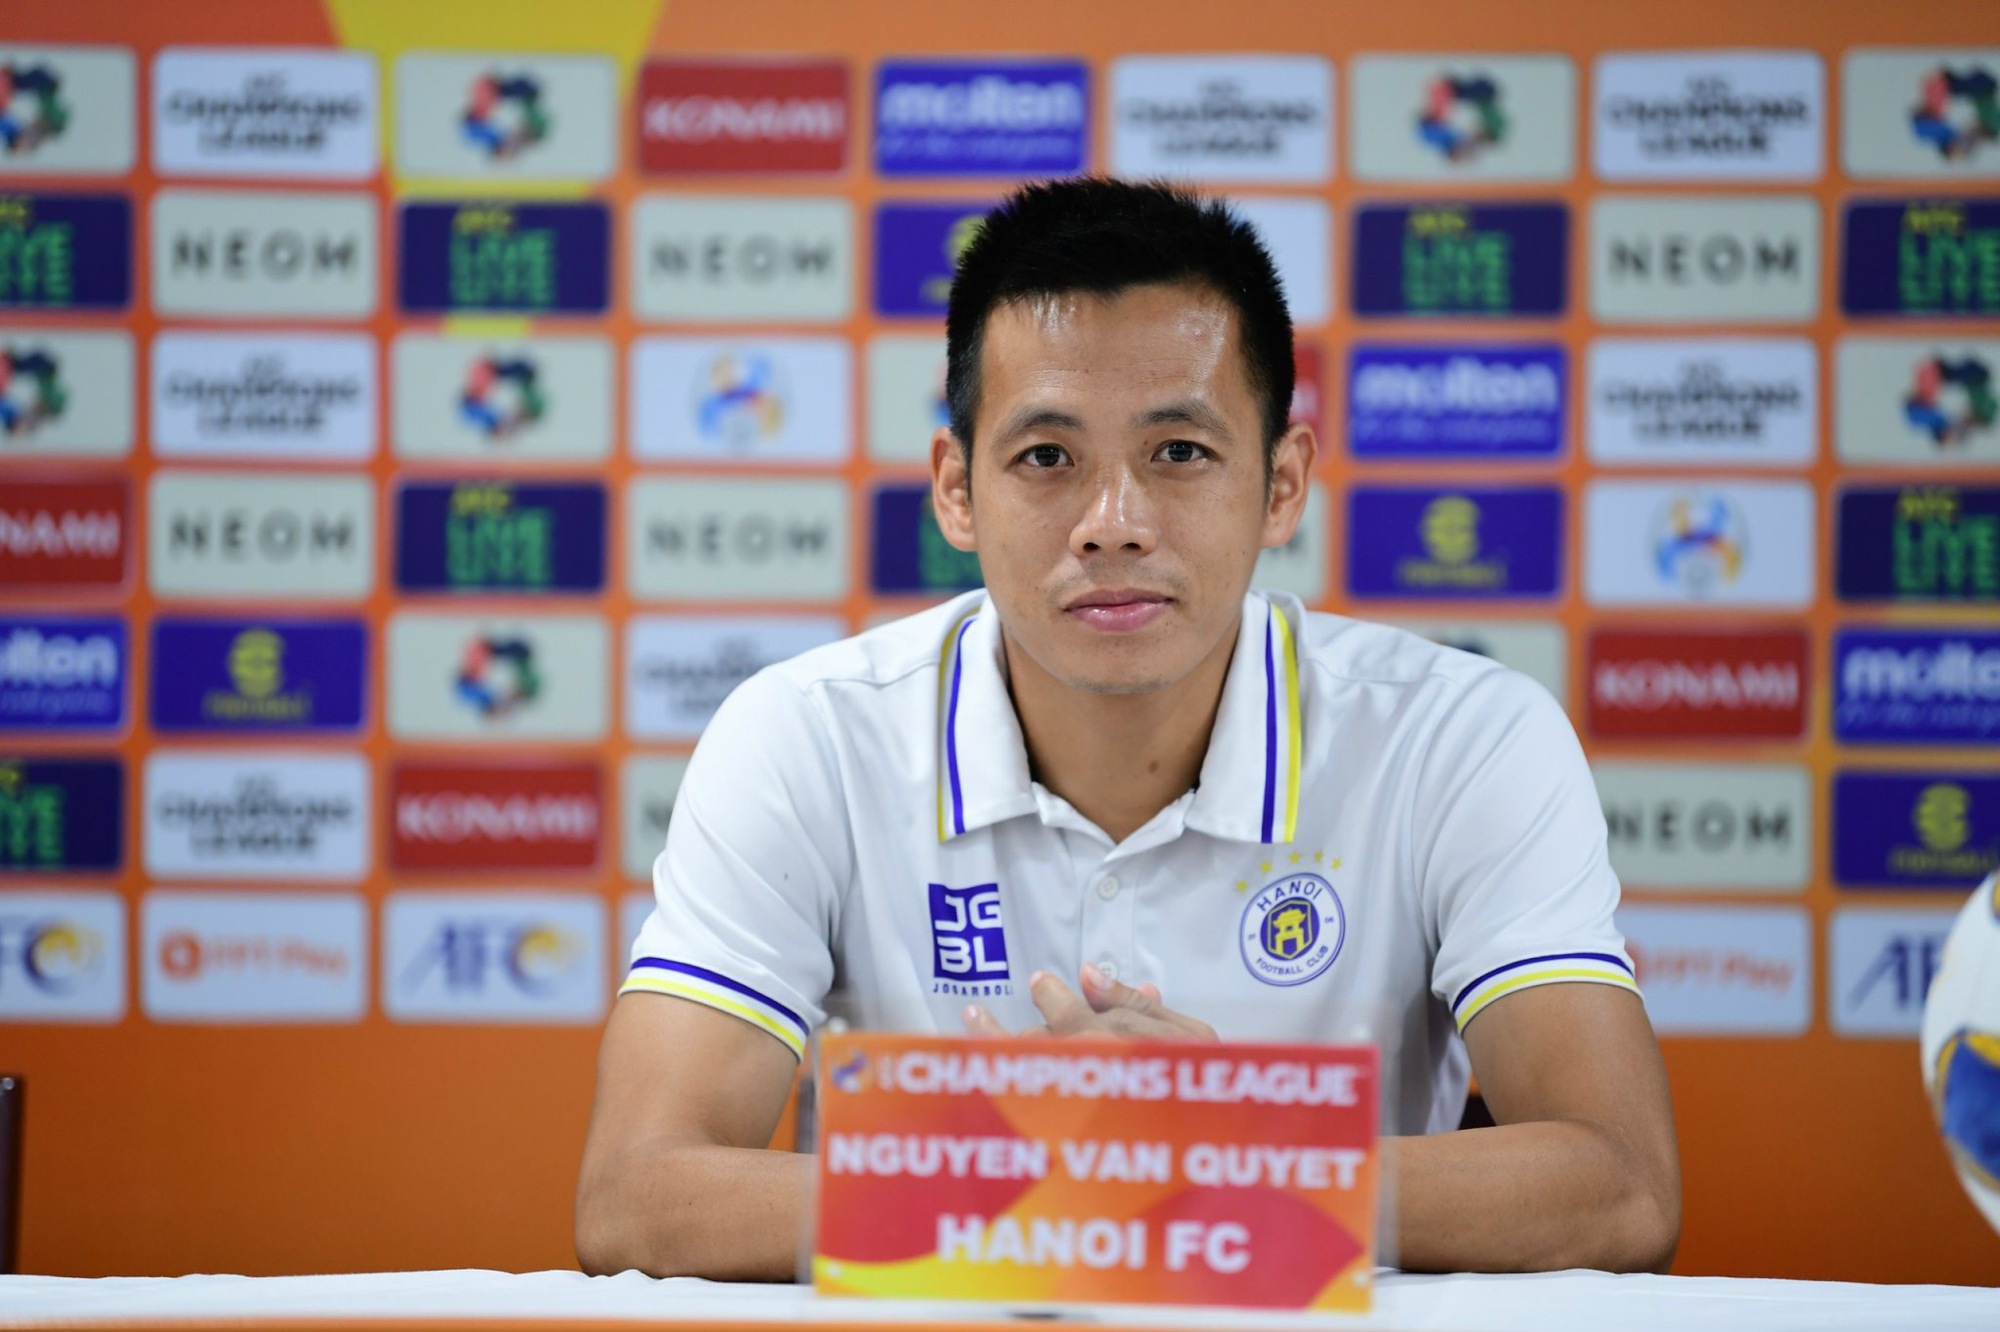 HLV Bandovic tự tin cùng CLB Hà Nội giành được kết quả tốt tại AFC Champions League - Ảnh 2.